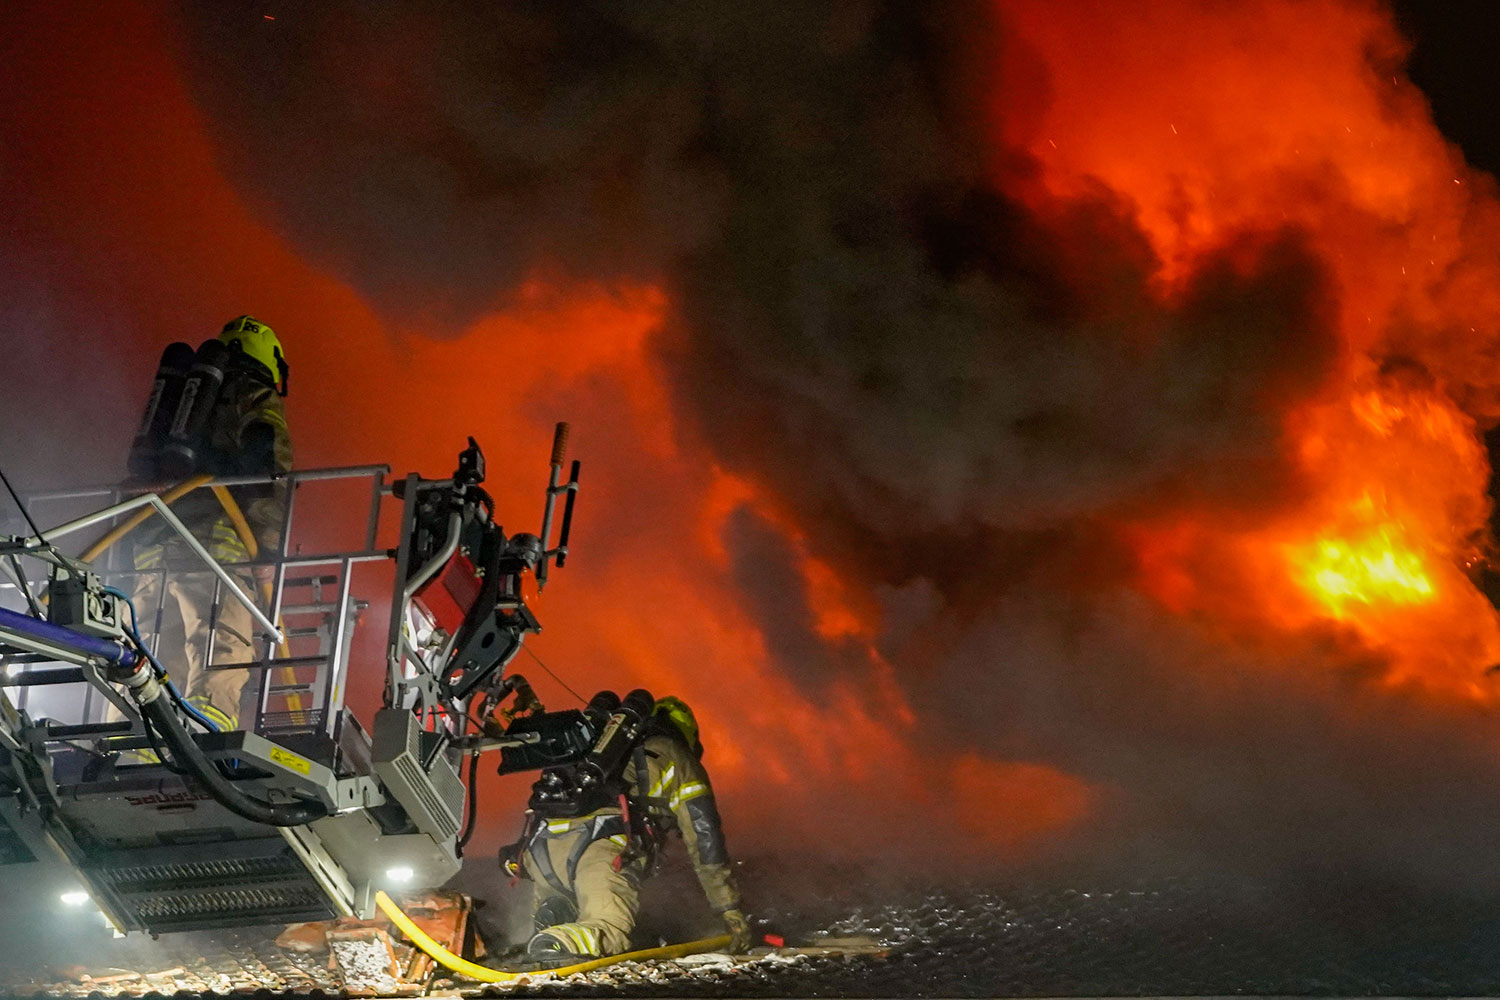 Mannskaper fra Oslo brann- og redningsetat jobber med å slukke brann i restaurant Festningen i Oslo sentrum lørdag kveld. 